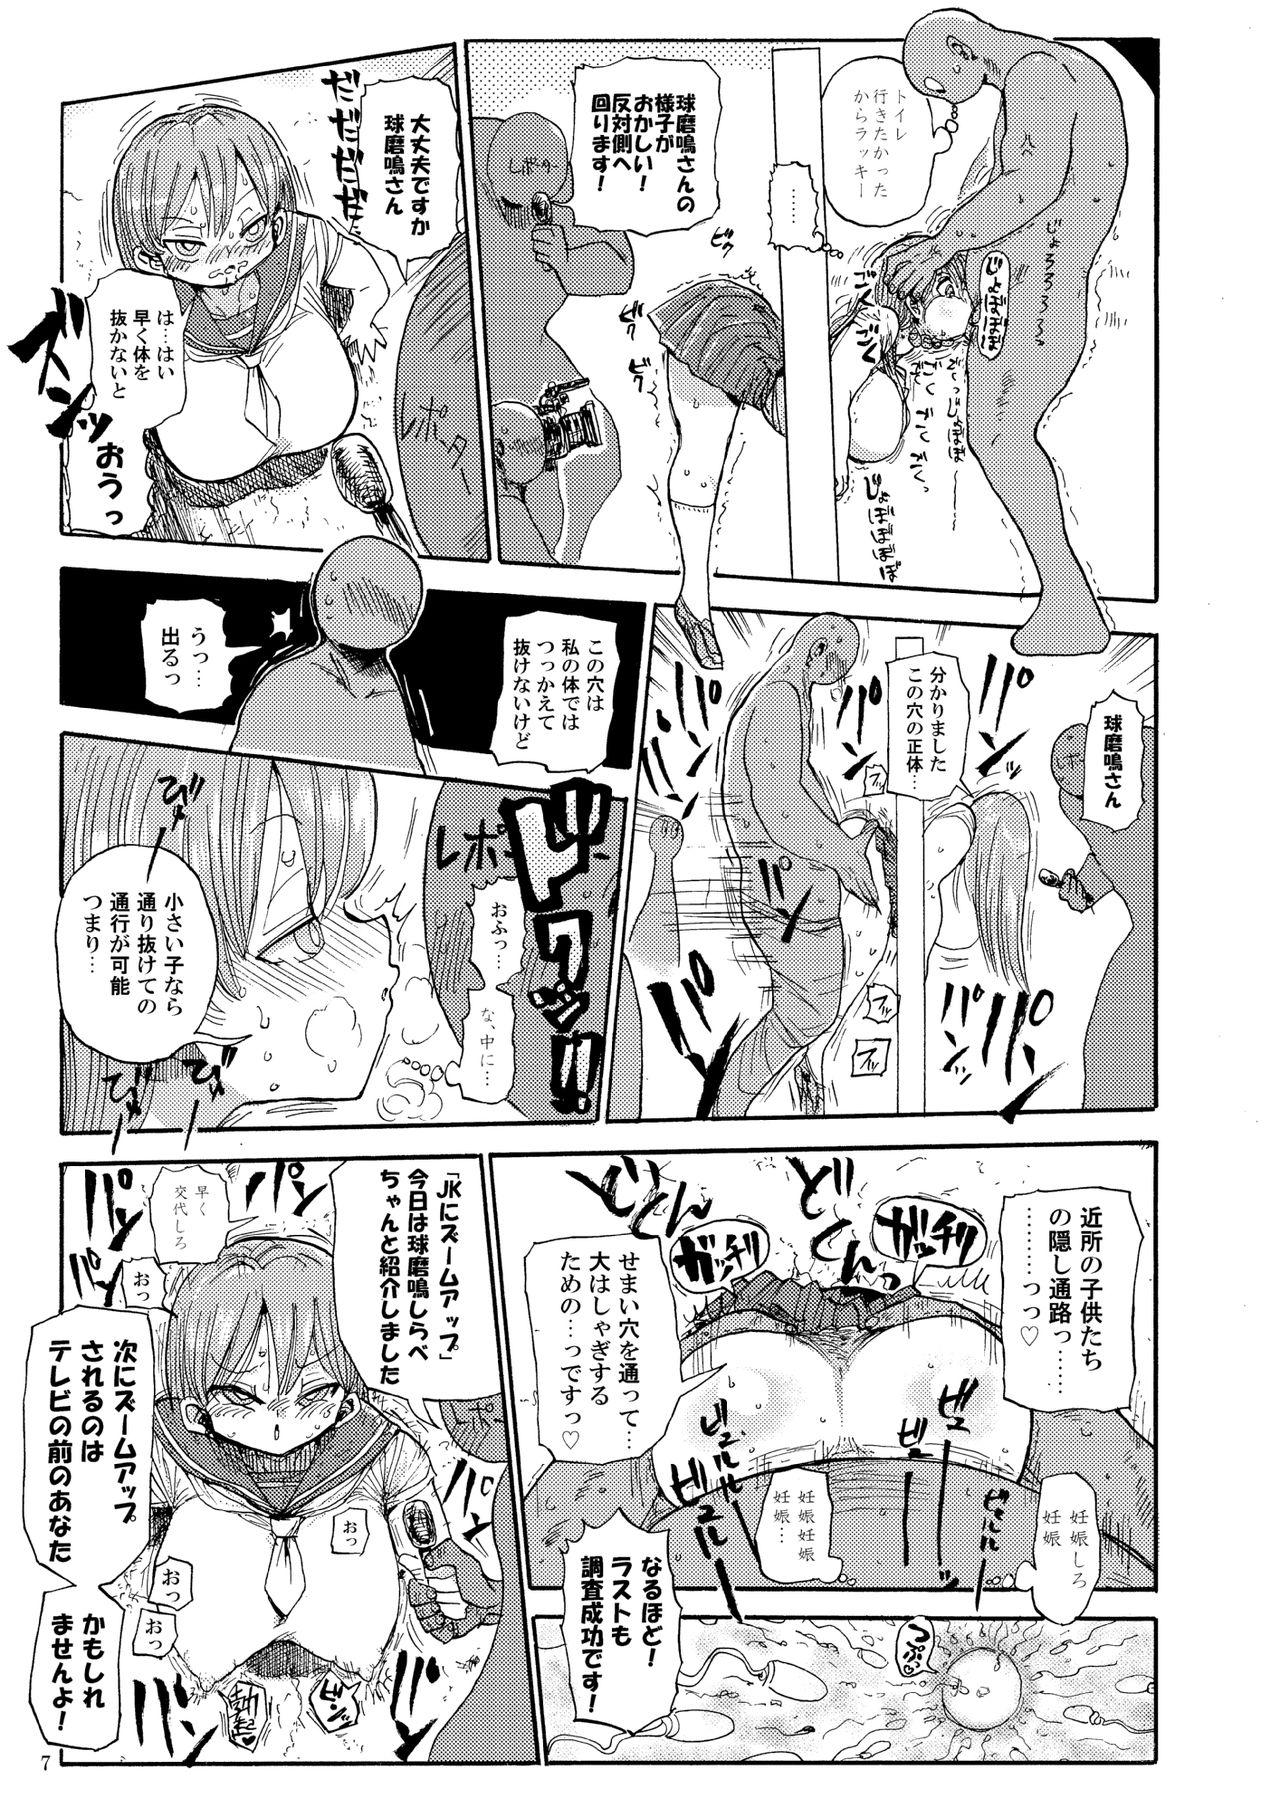 Topless Nandemo Chousa Shoujo no Doujinshi ga Deta? Wakarimashita Chousa Shimasu High Heels - Page 6